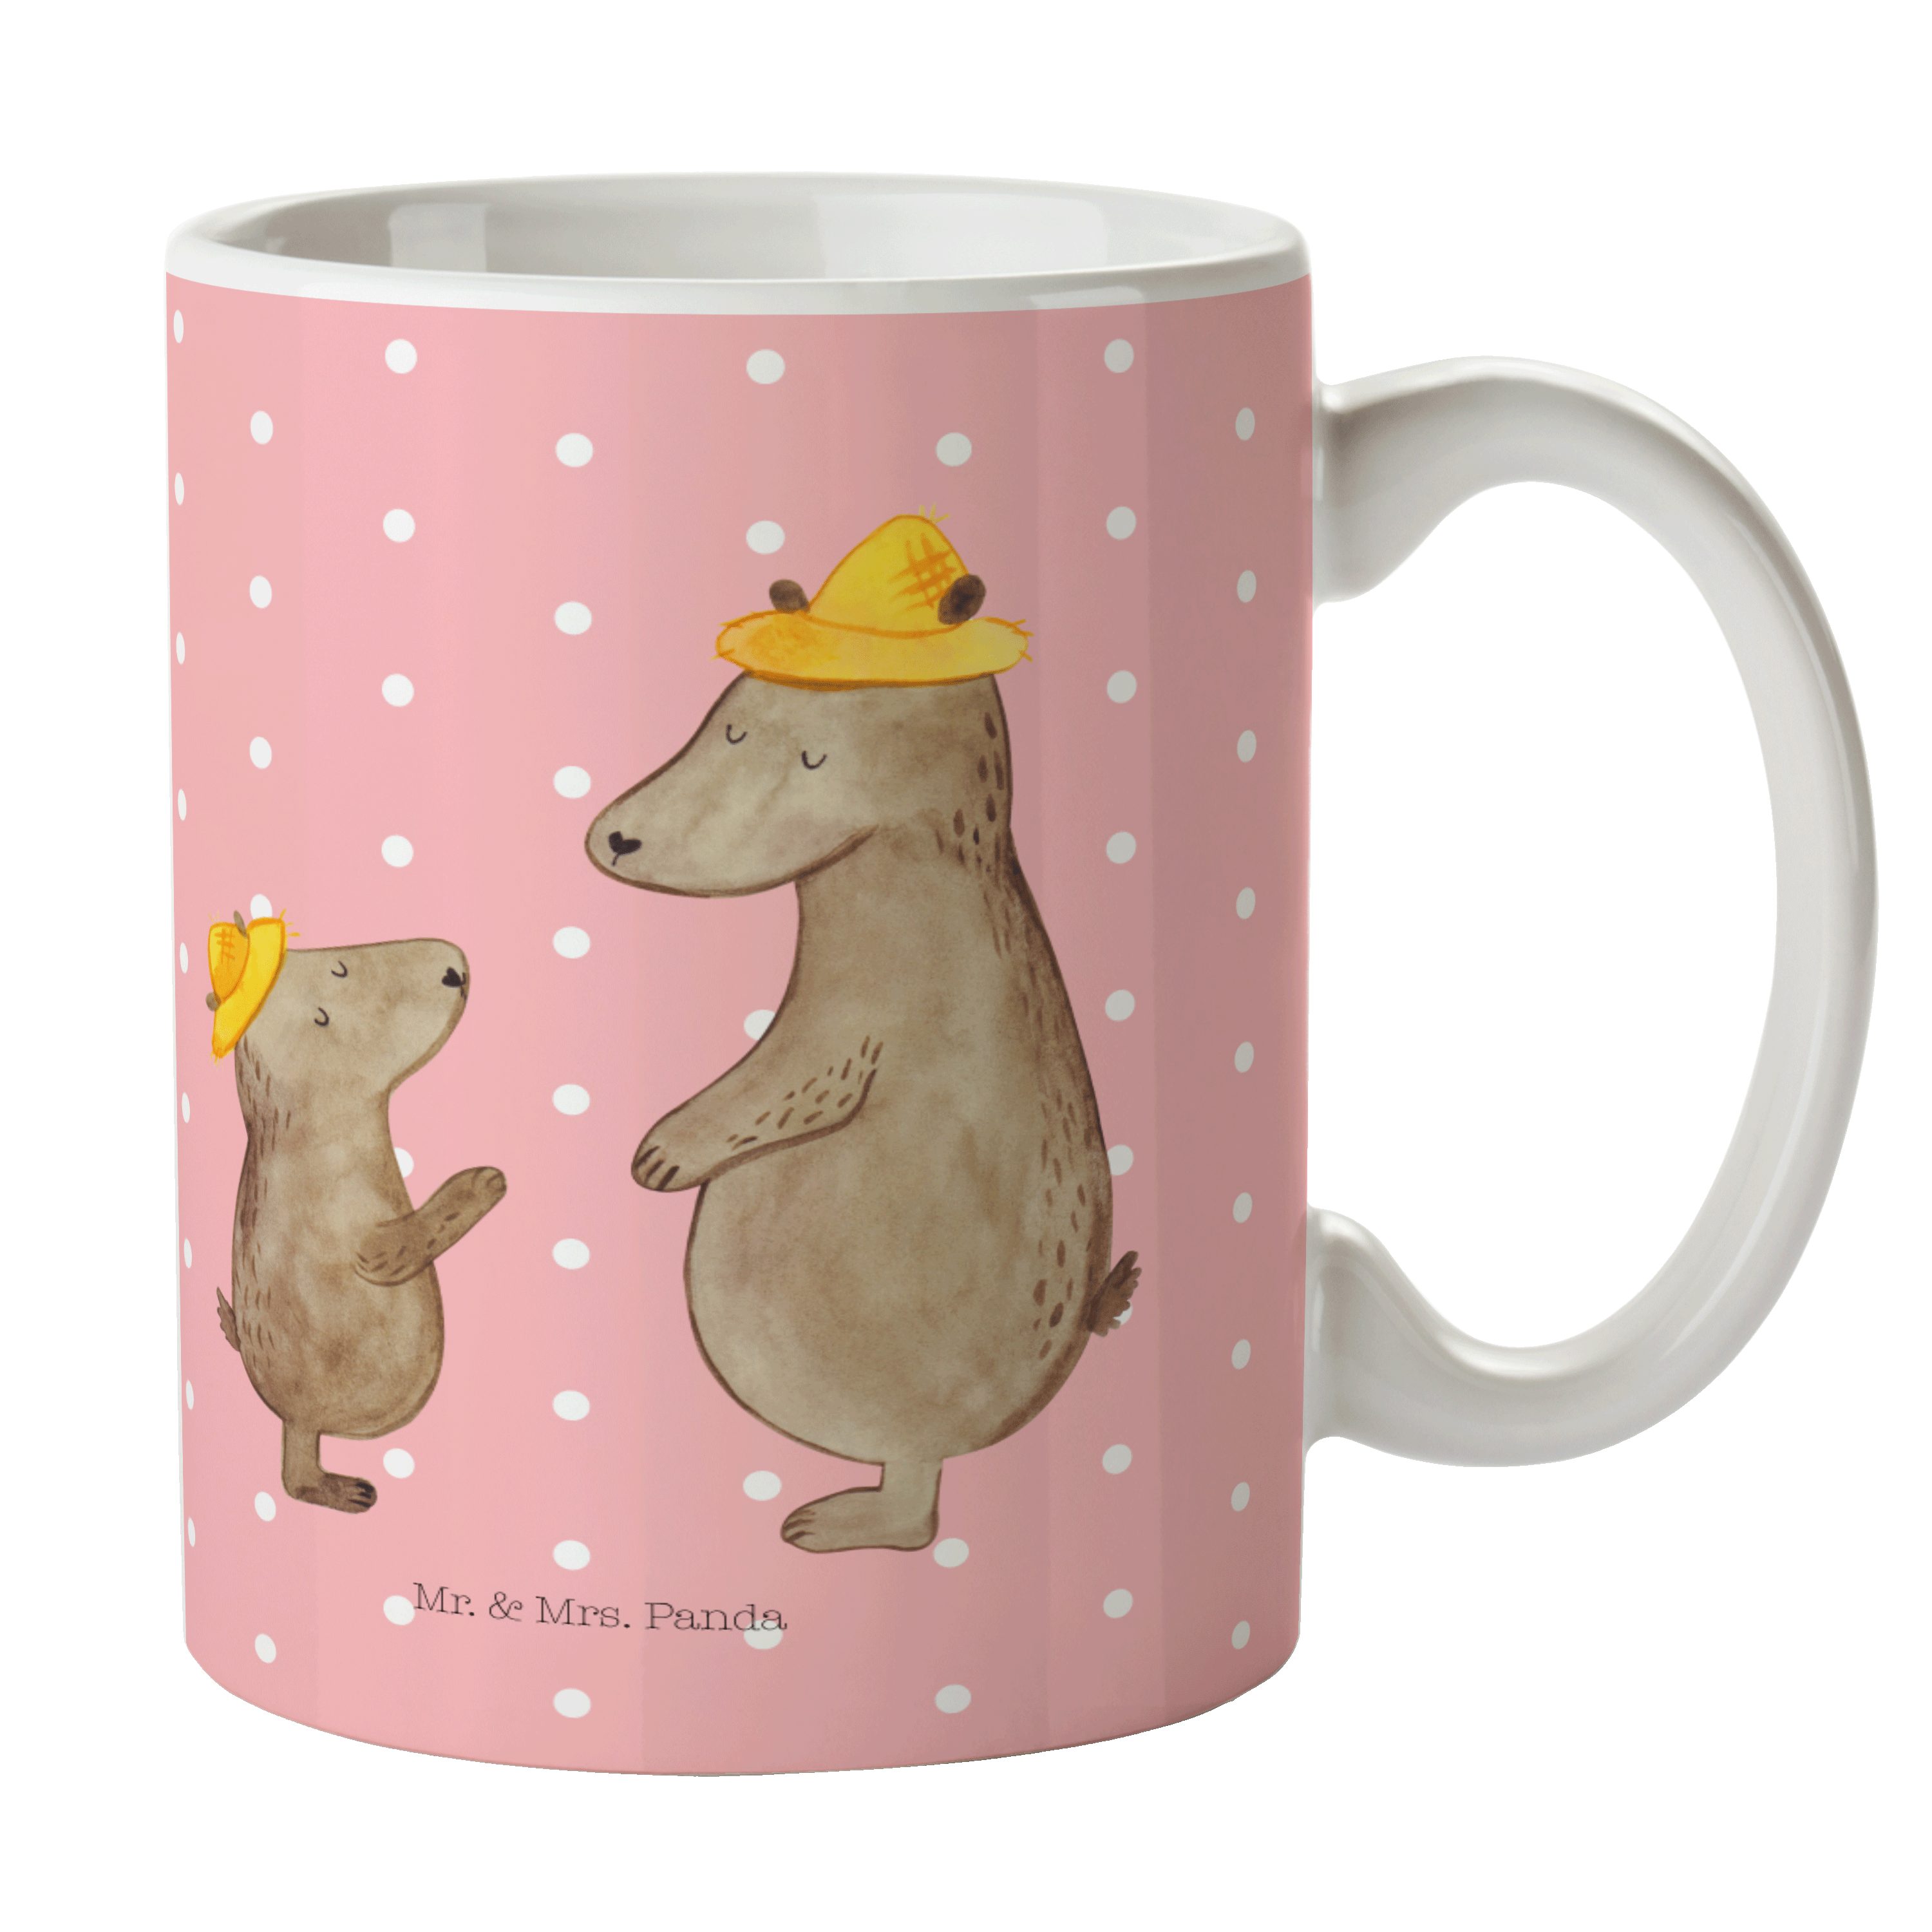 Mr. & Mrs. Panda Tasse Bären mit Hut - Rot Pastell - Geschenk, Vatertag, Muttertag, Kind, Ki, Keramik